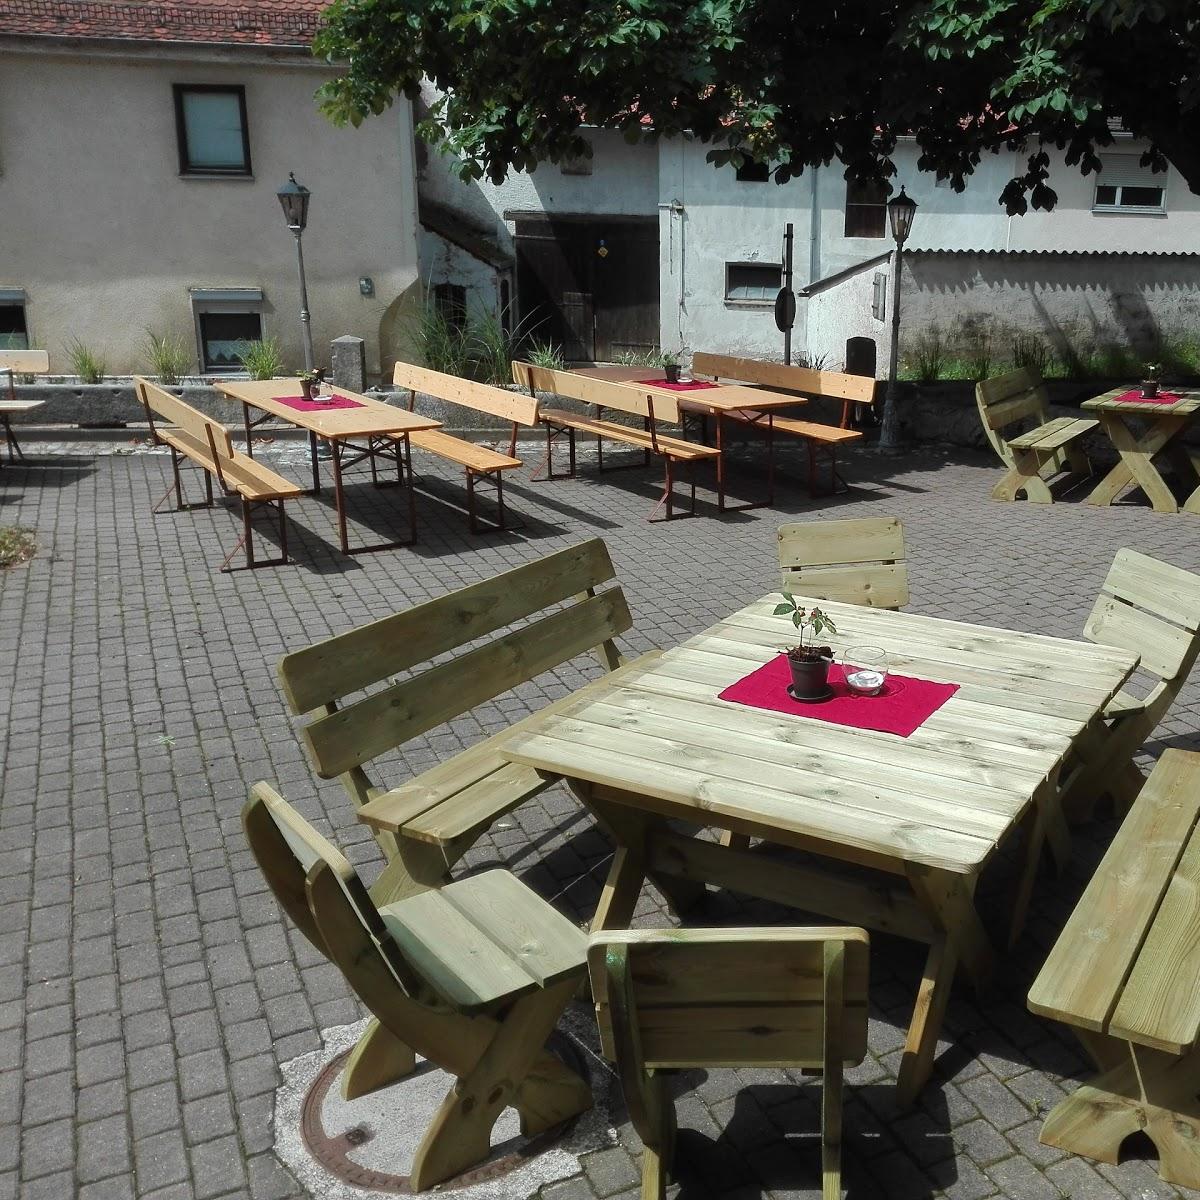 Restaurant "Gaststätte Altmühlgrund" in Treuchtlingen